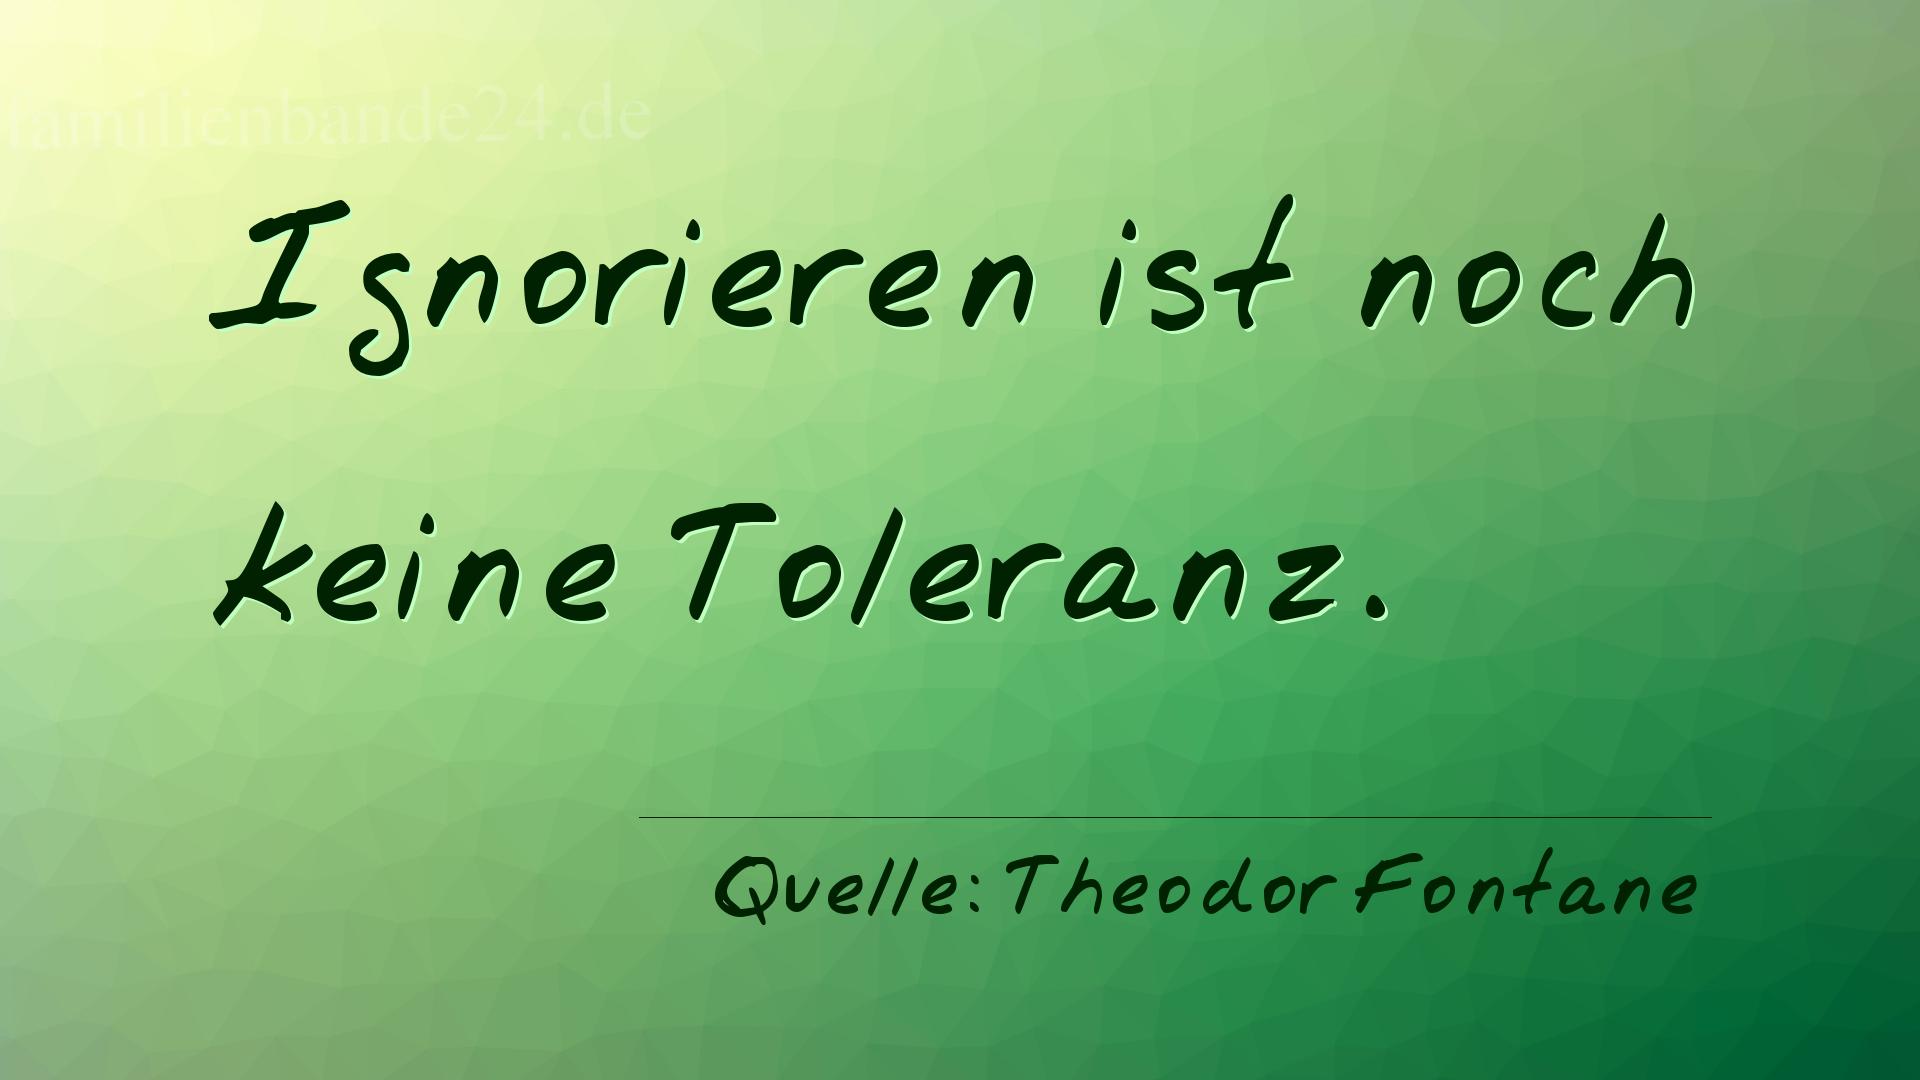 Aphorismus Nummer 1289 (von Theodor Fontane): "Ignorieren ist noch keine Toleranz." 